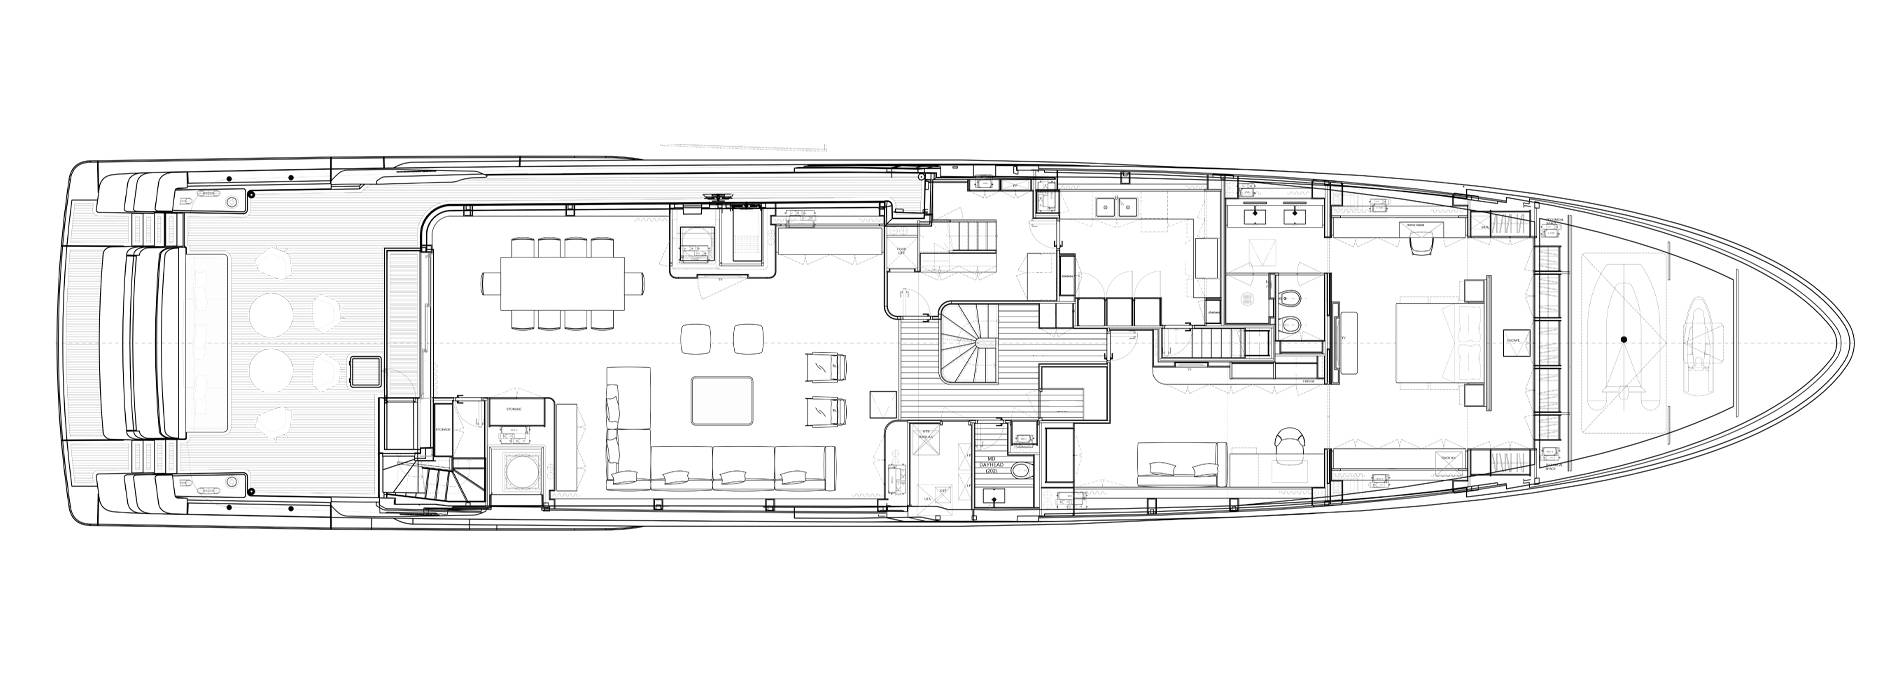 Sanlorenzo Yachts SD132 Main deck